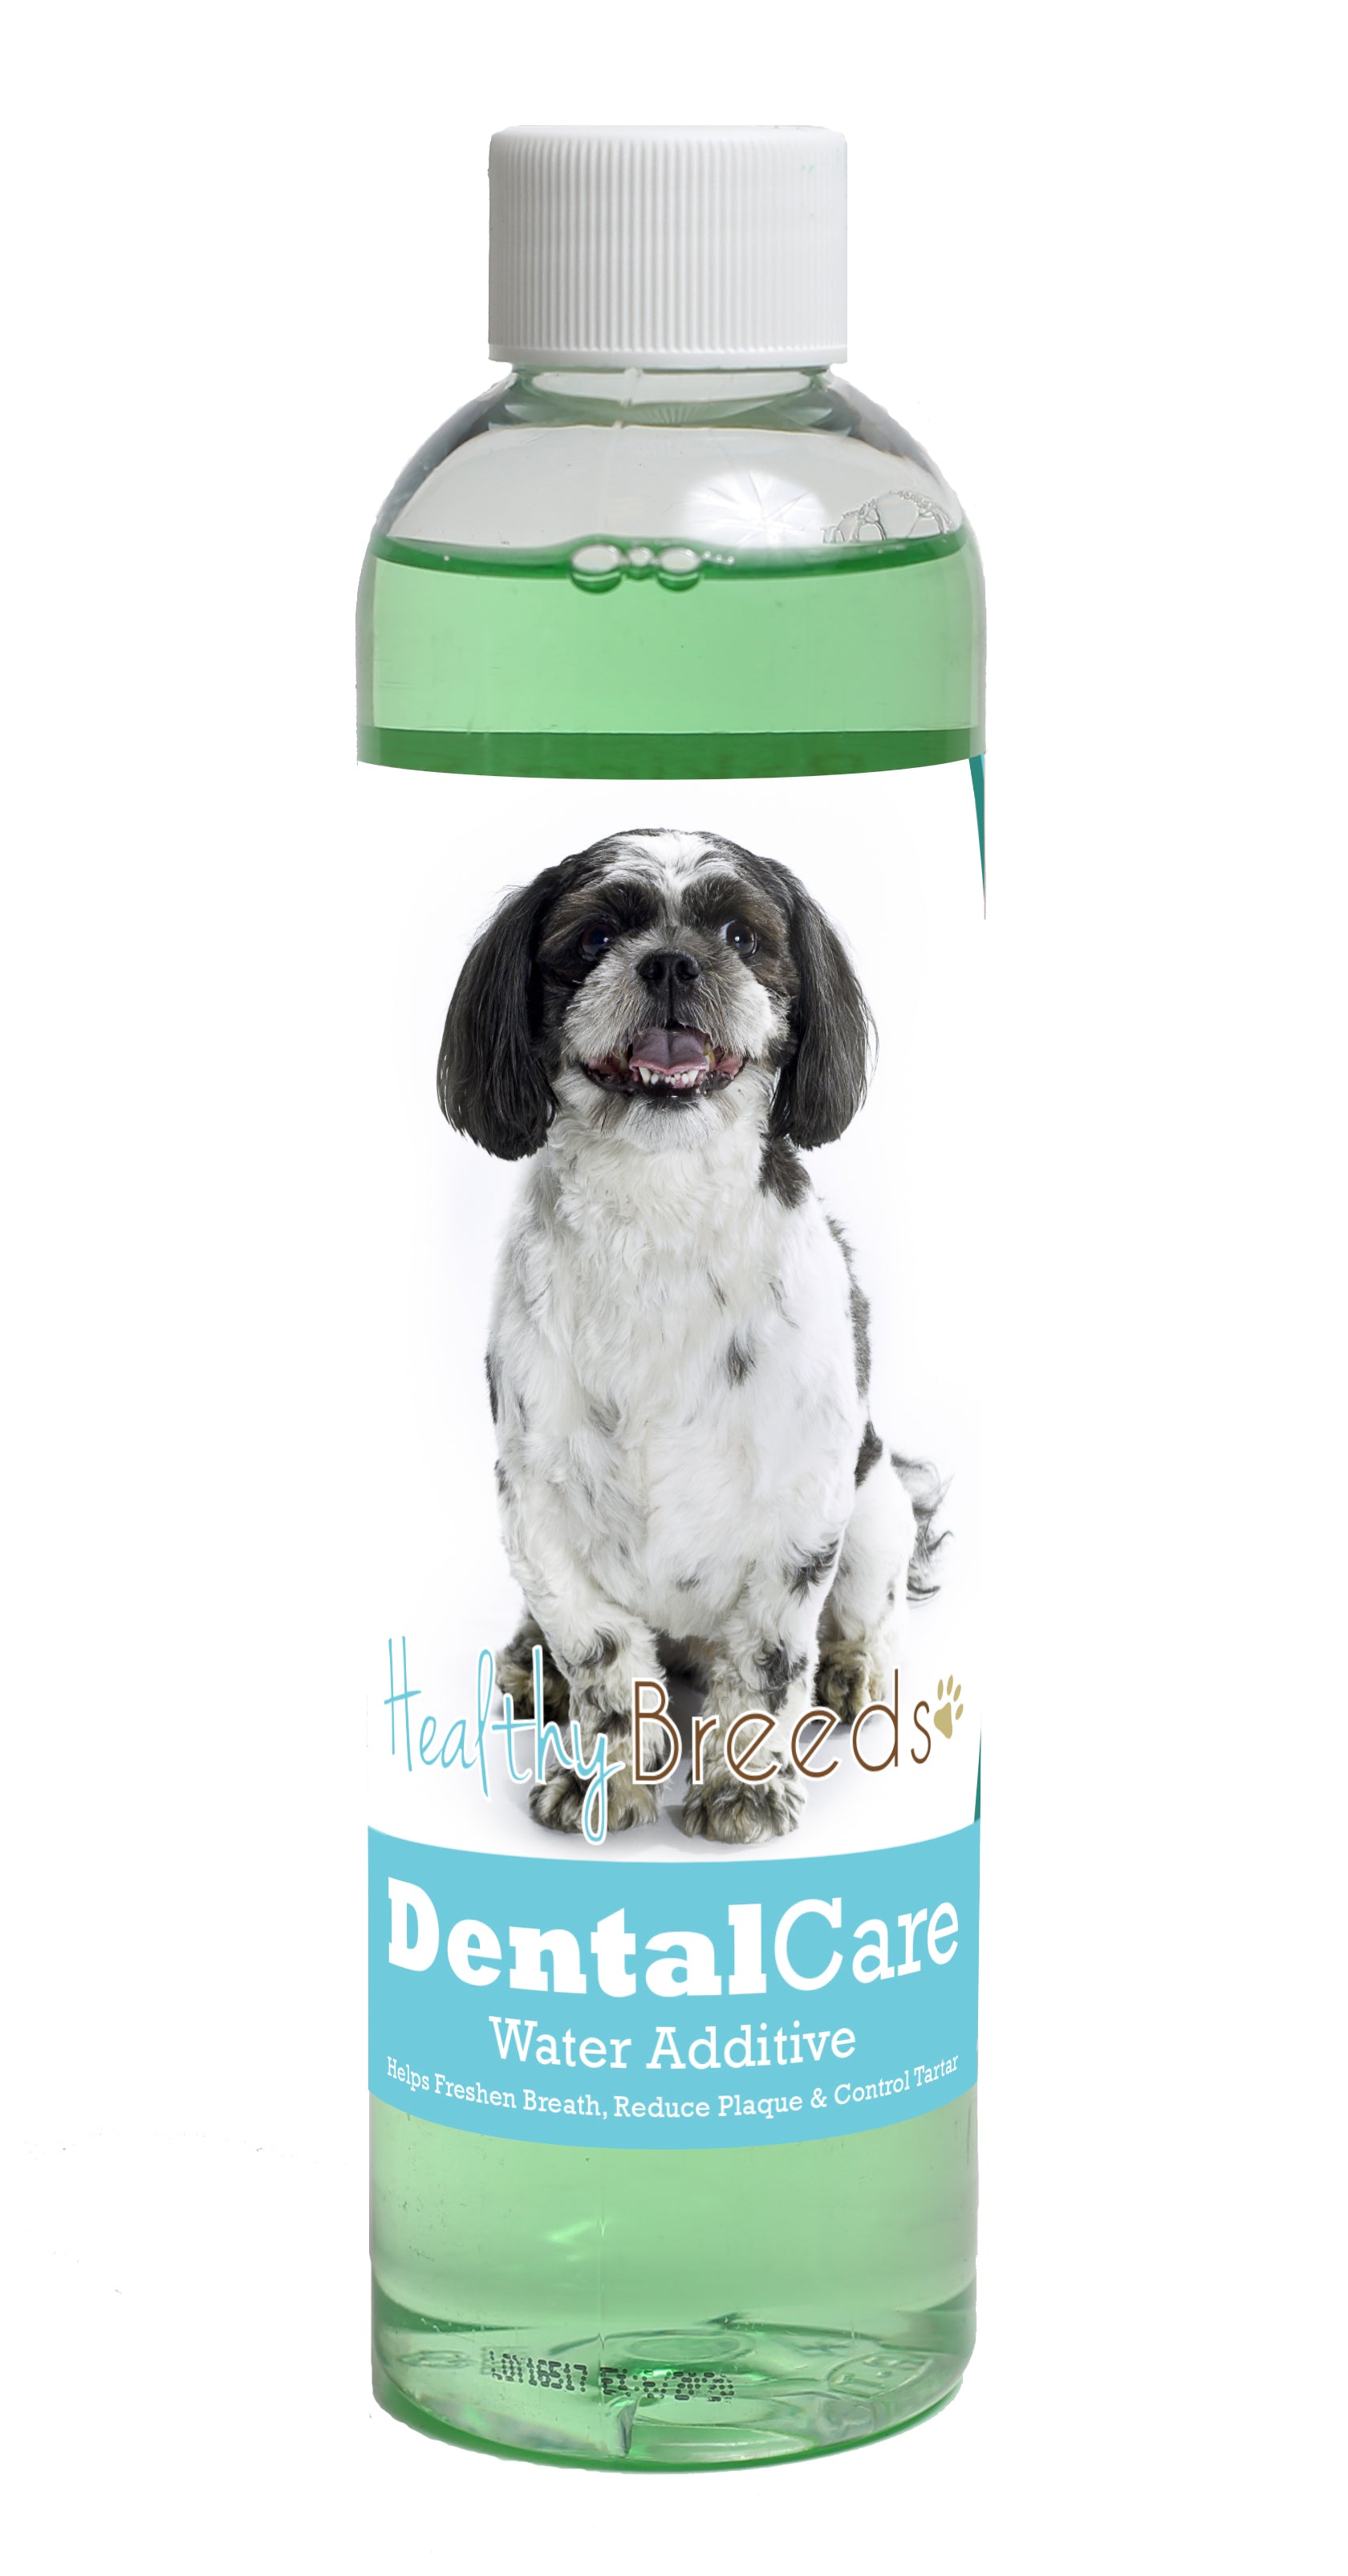 Shih-Poo Dental Rinse for Dogs 8 oz